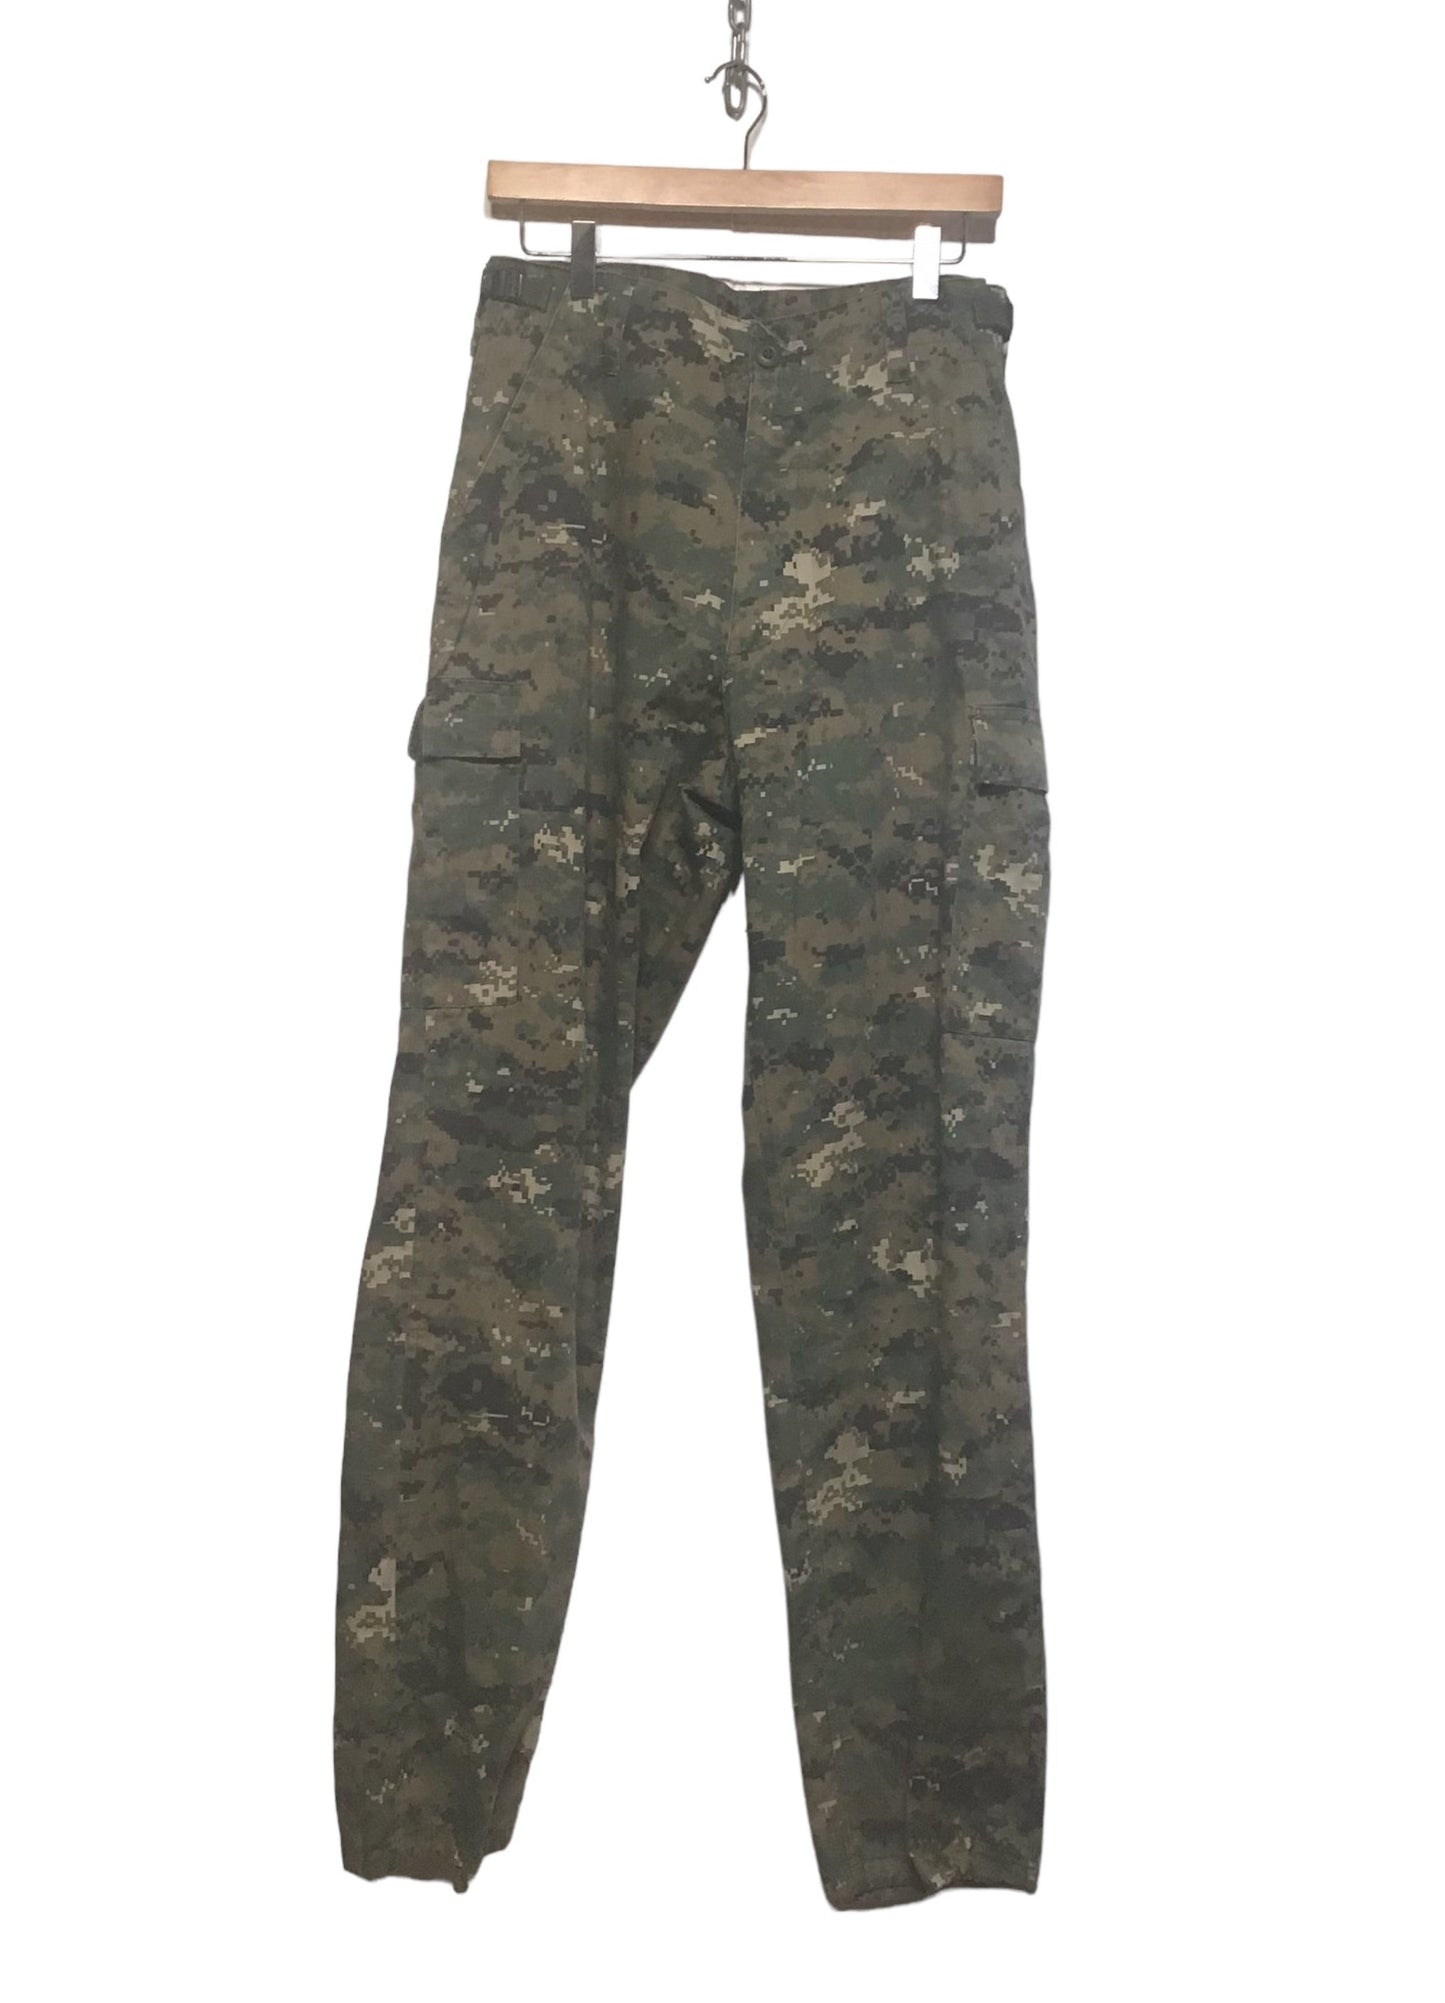 Army Pants (30x32)